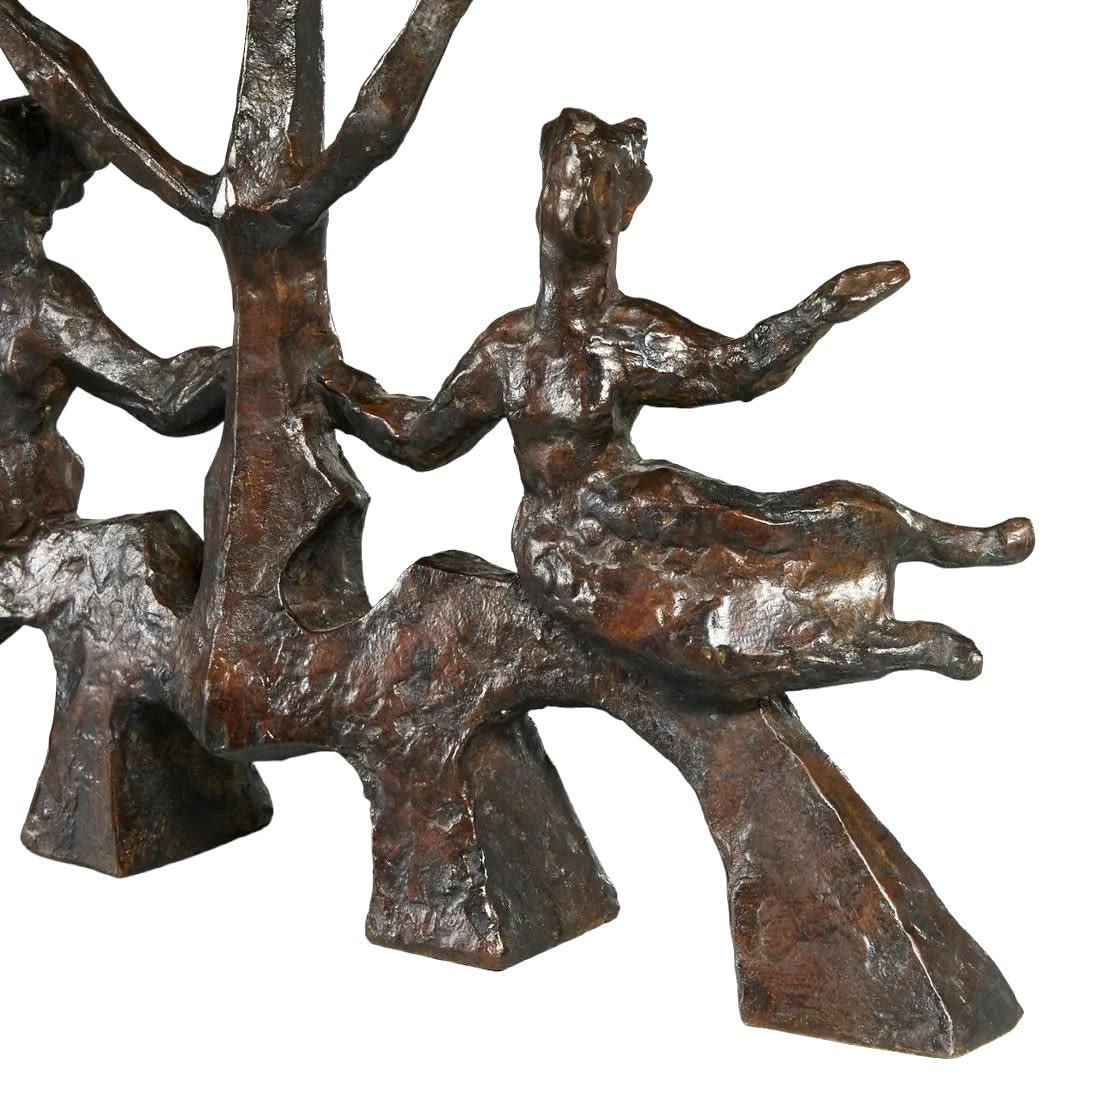 Chaim Gross 1902 - 1991, Menorah en bronze

Signé et numéroté 1/6 sur le pied arrière,

13,5 